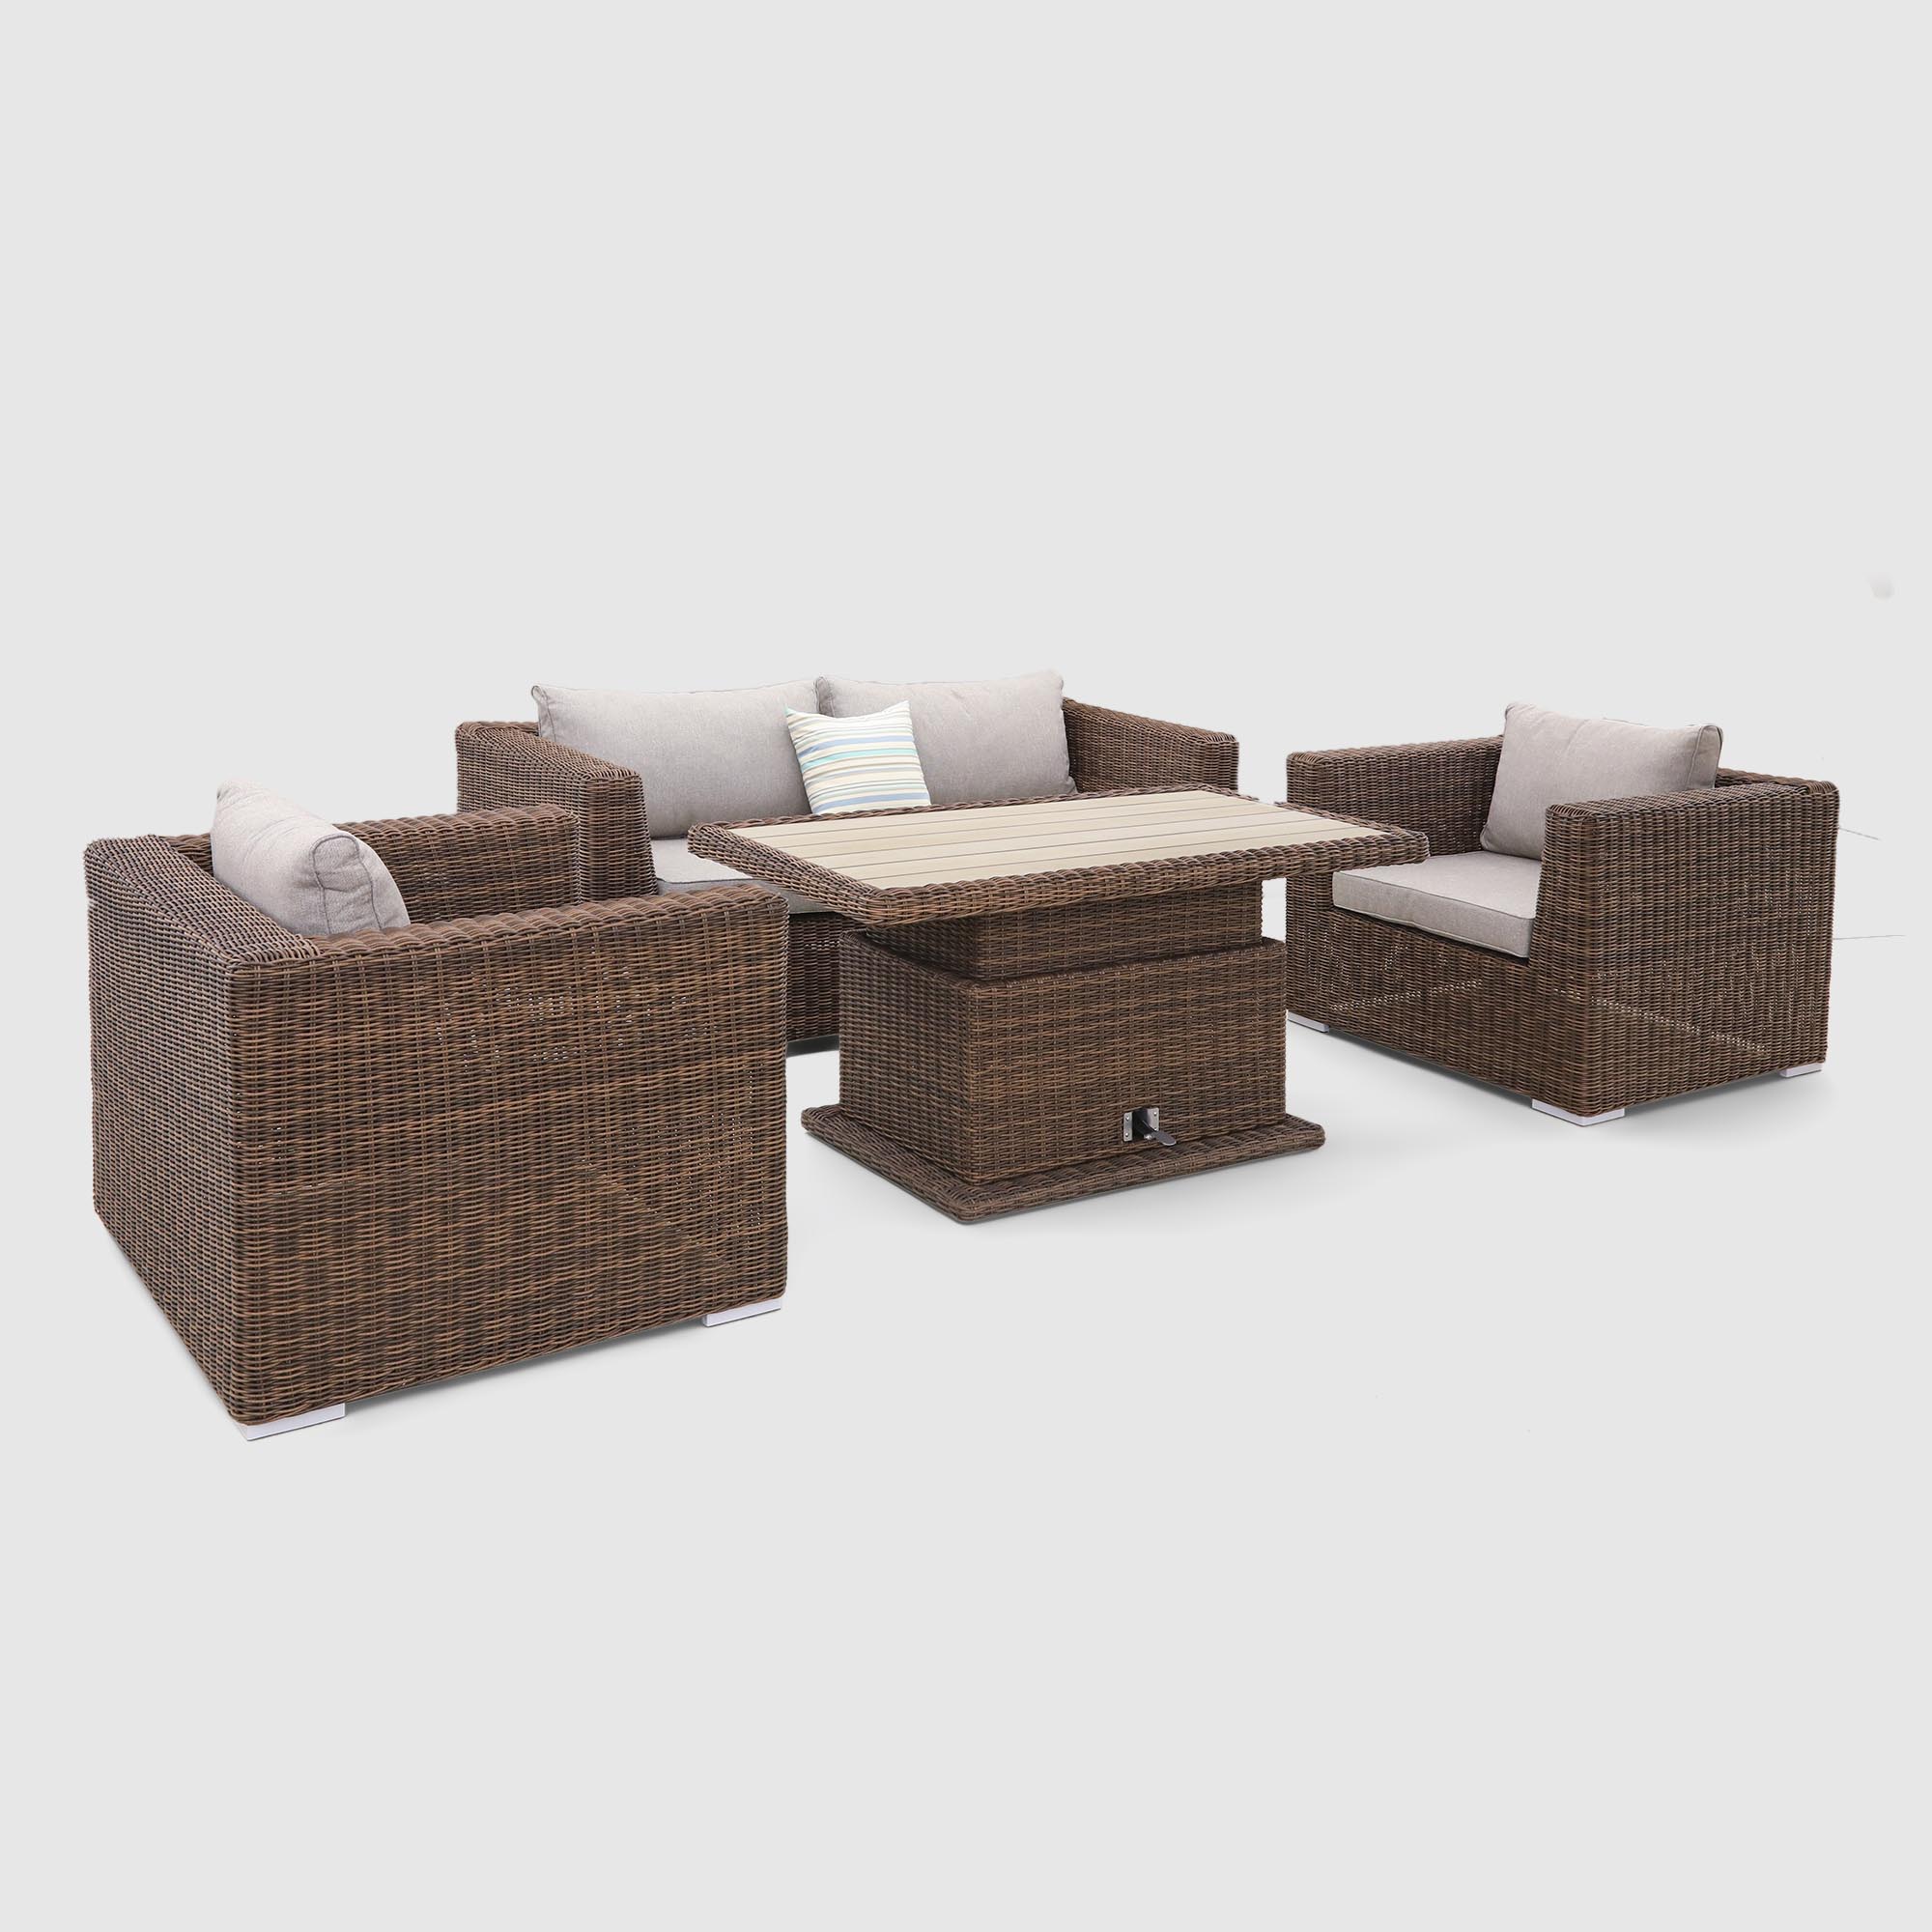 Комплект мебели Yuhang коричневый с серым 4 предмета комплект мебели yuhang 4 предмета голубой